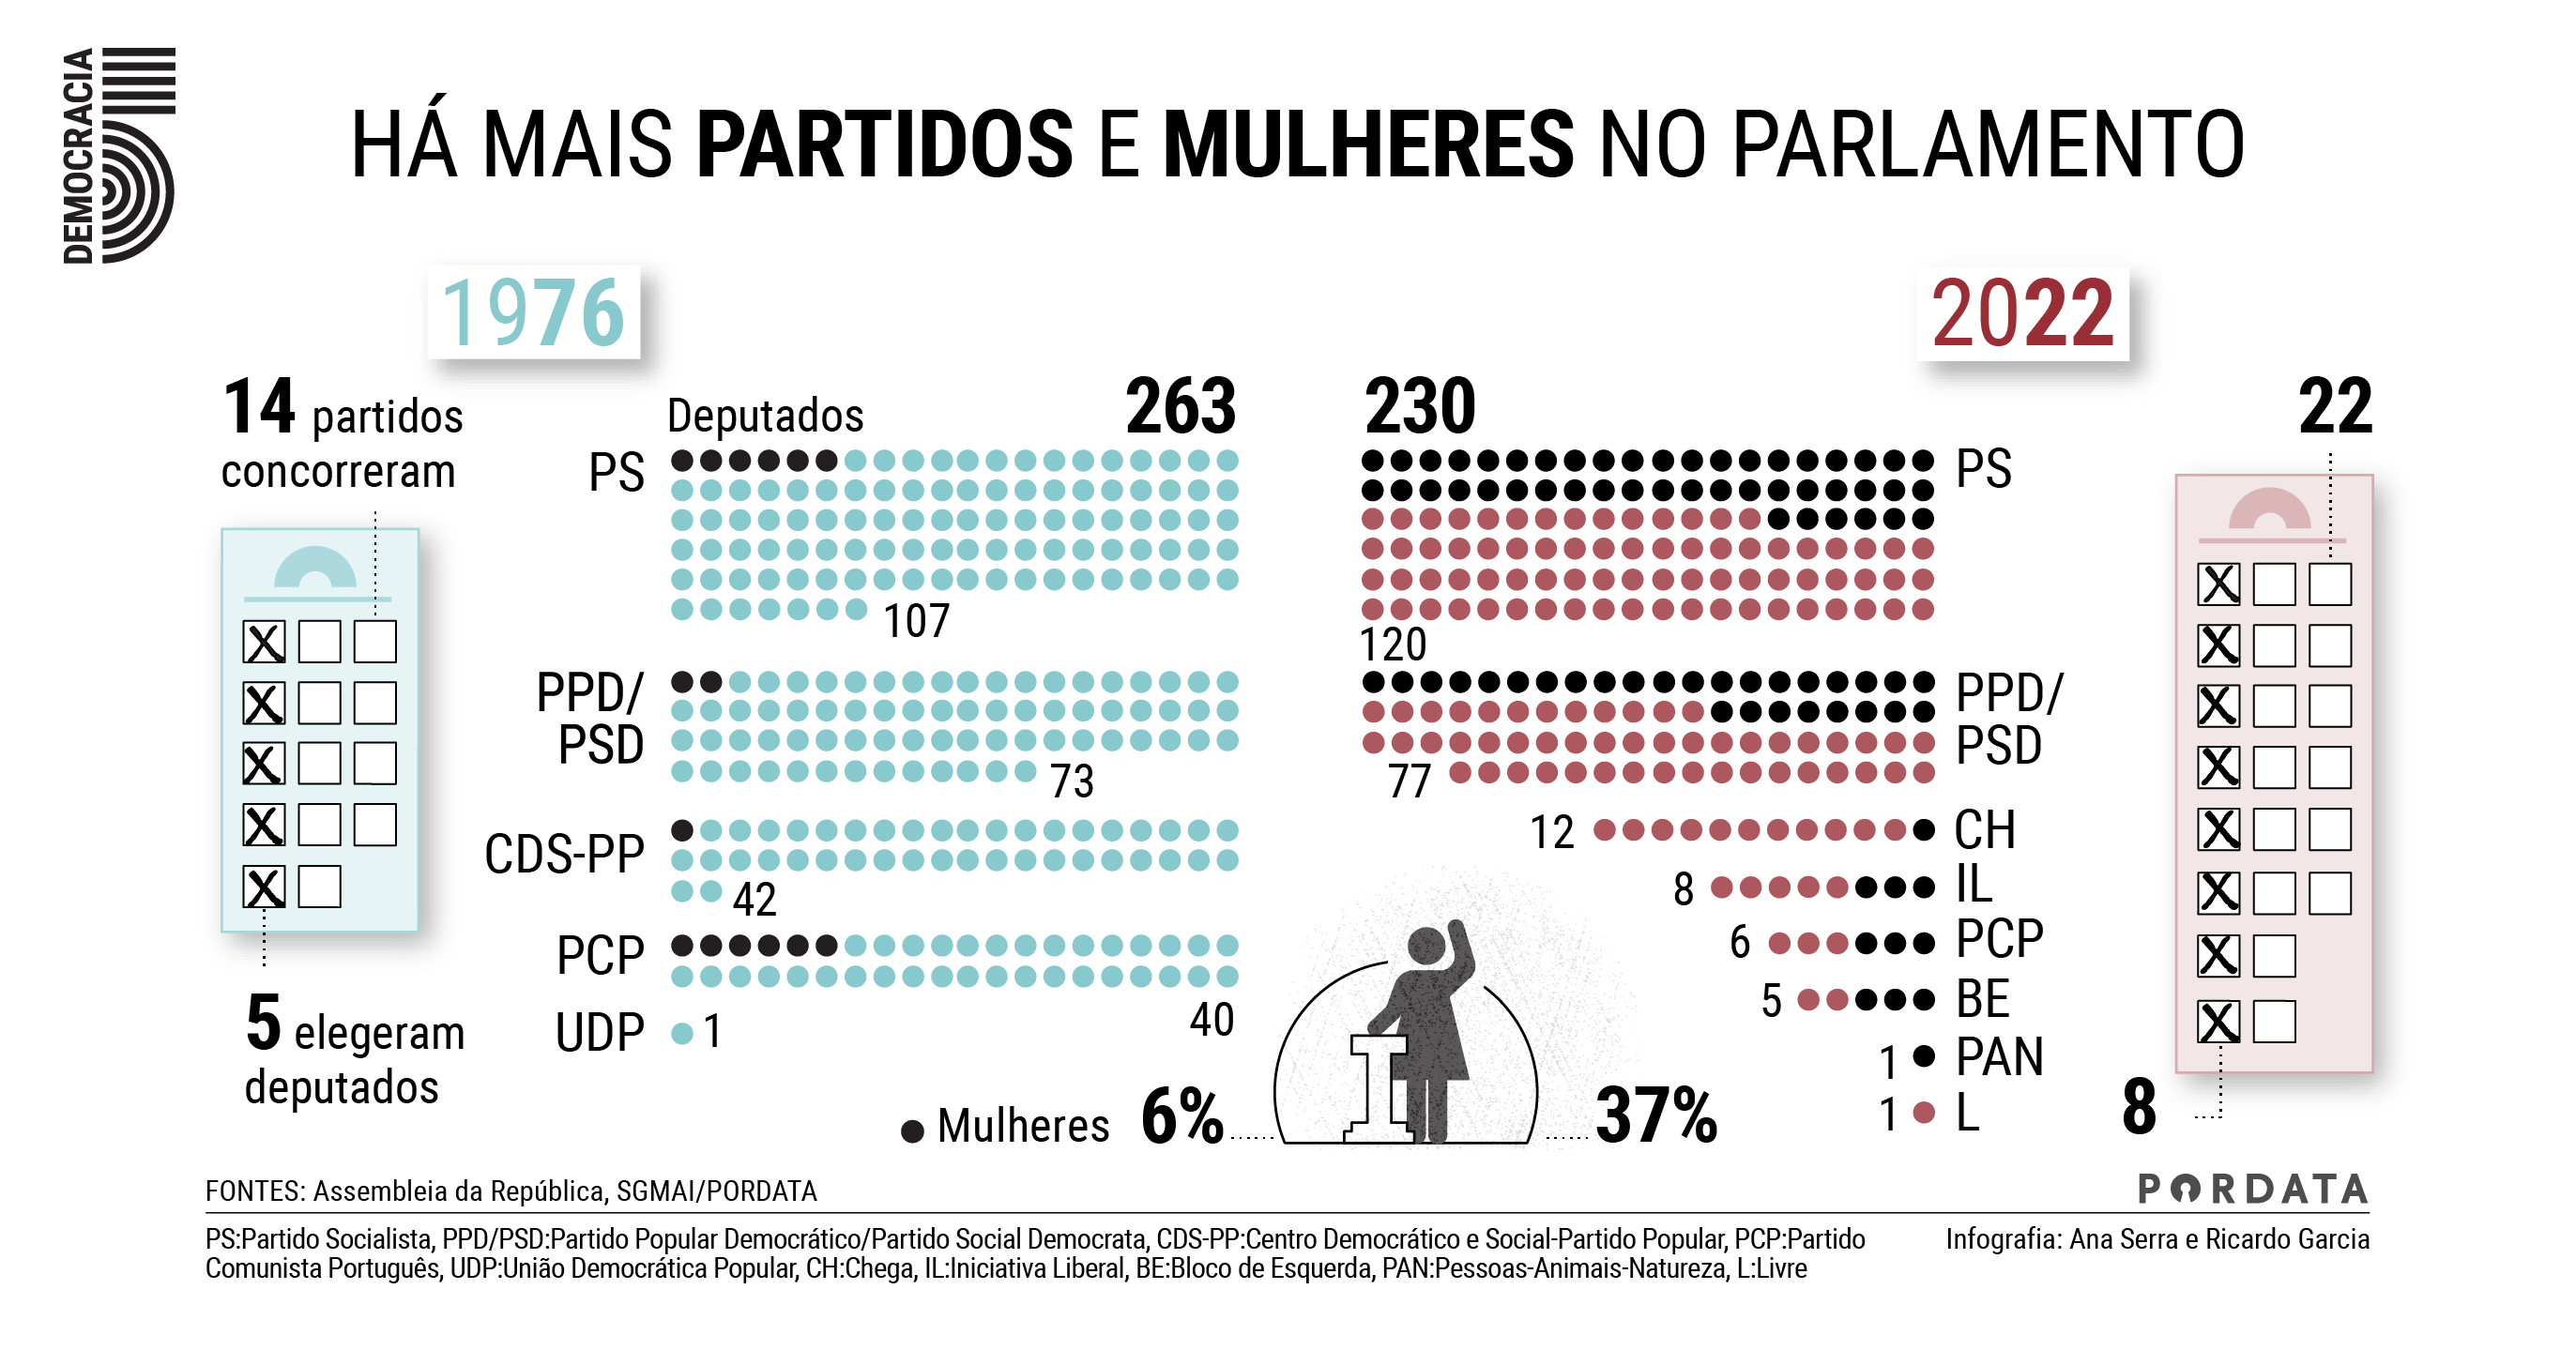 Há mais partidos e mulheres no parlamento